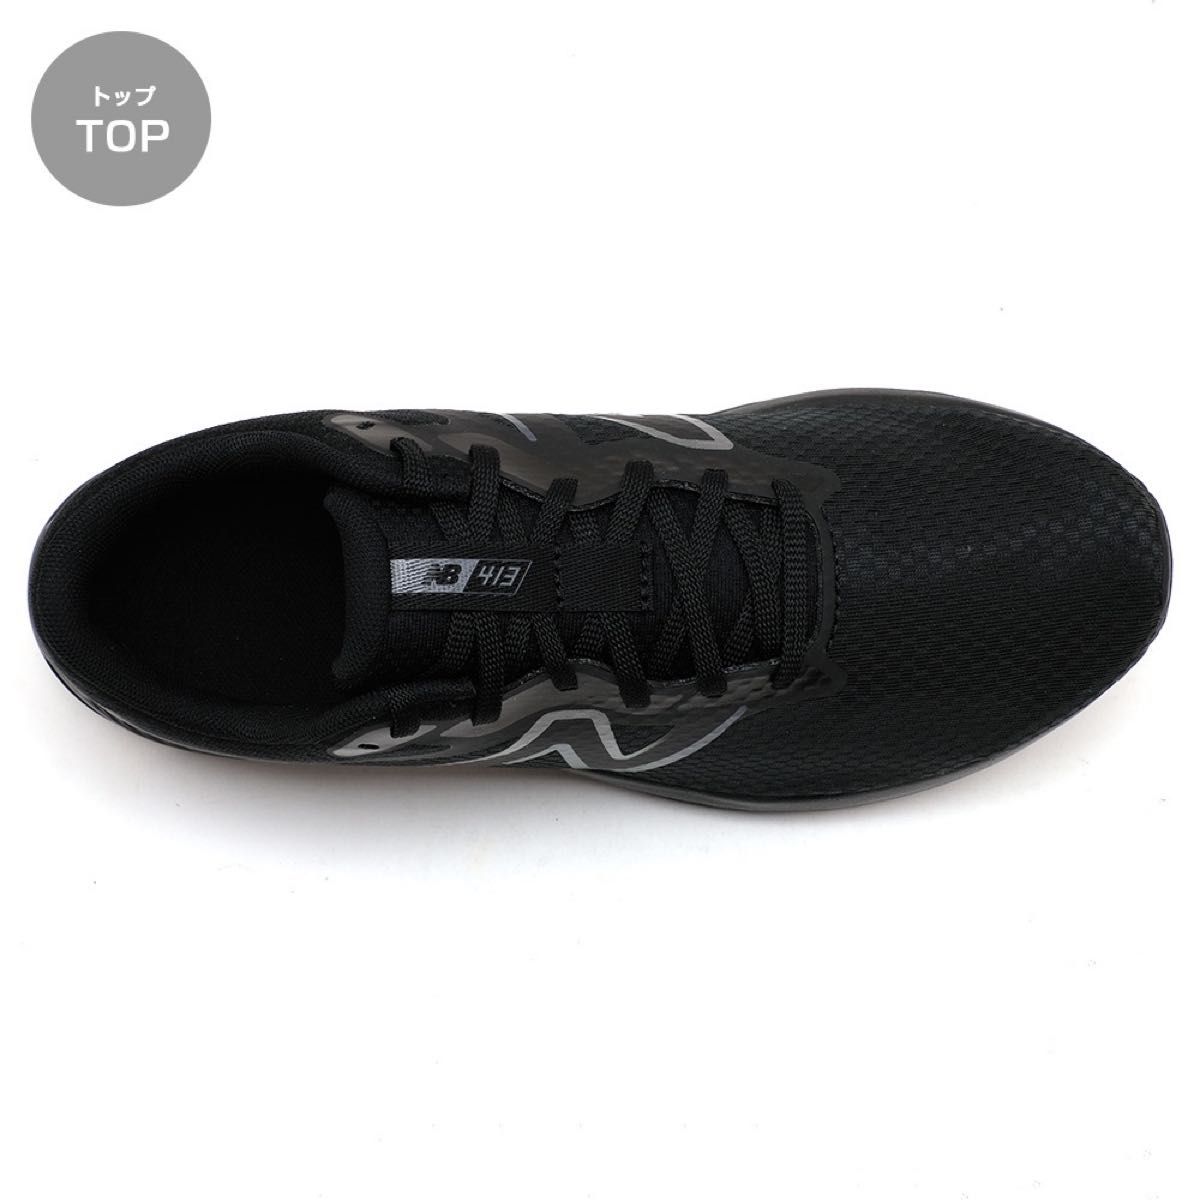 ニューバランス メンズ スニーカー ブラック 黒27.5cm ランニング ジョギング ウォーキング トレーニング 散歩 通勤 靴